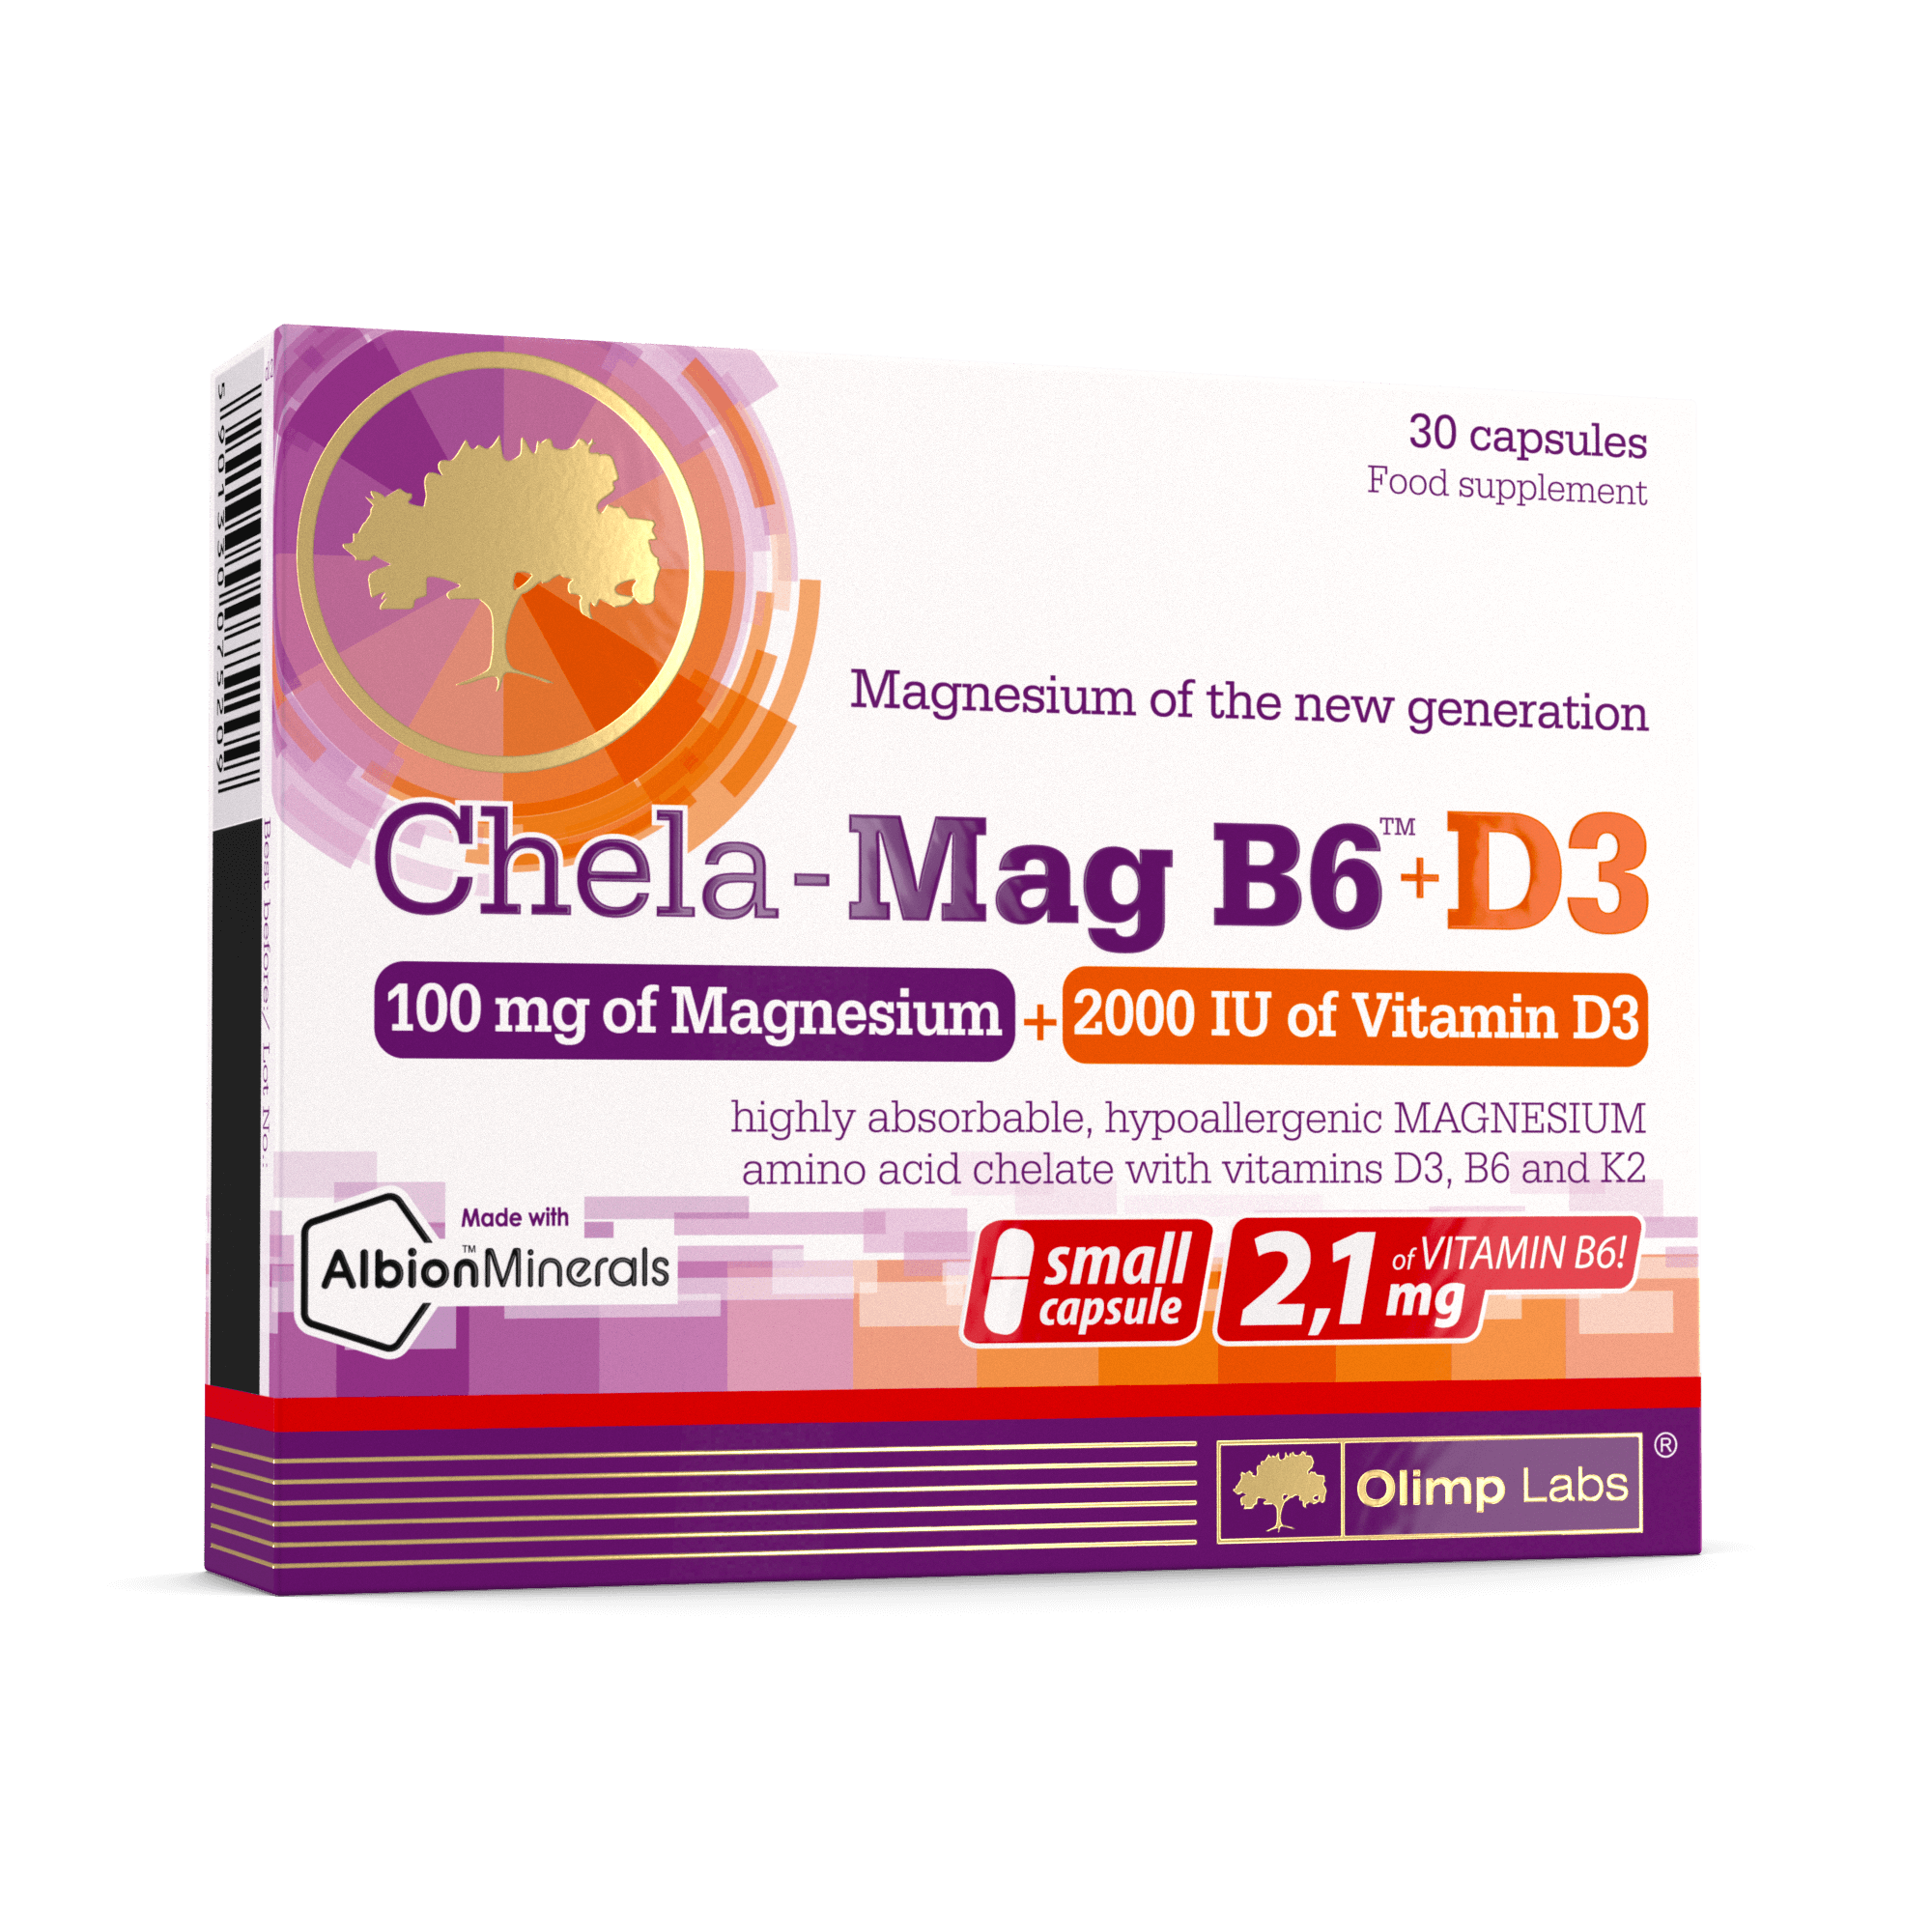 Chela-Mag B6+D3